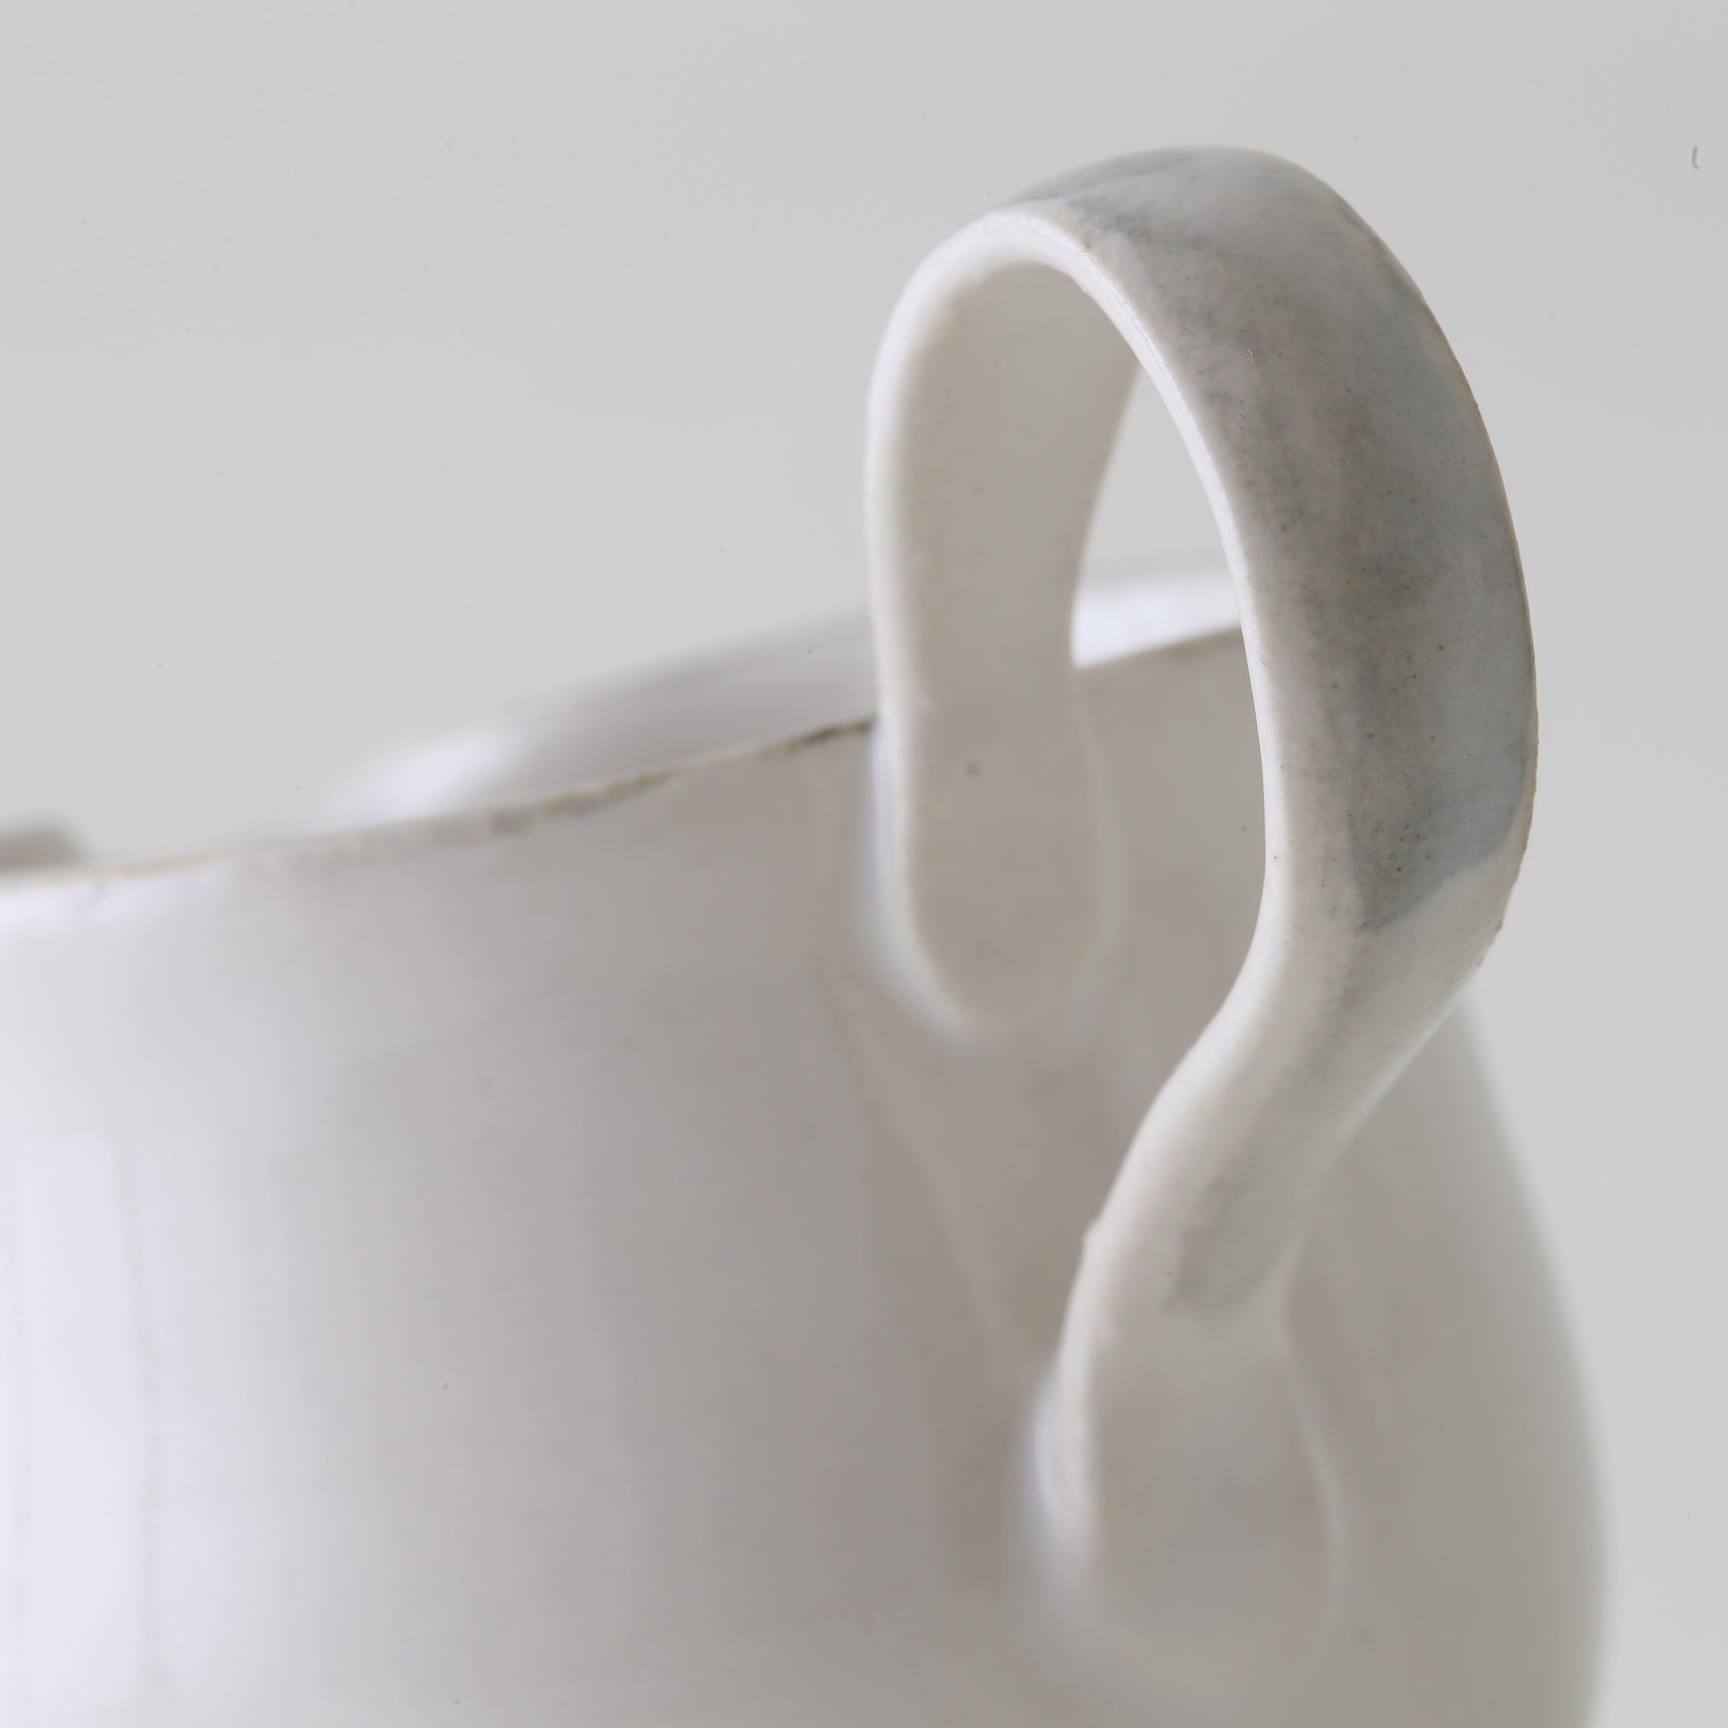 wakako ceramics/ことりミルクピッチャー - スタイルストア